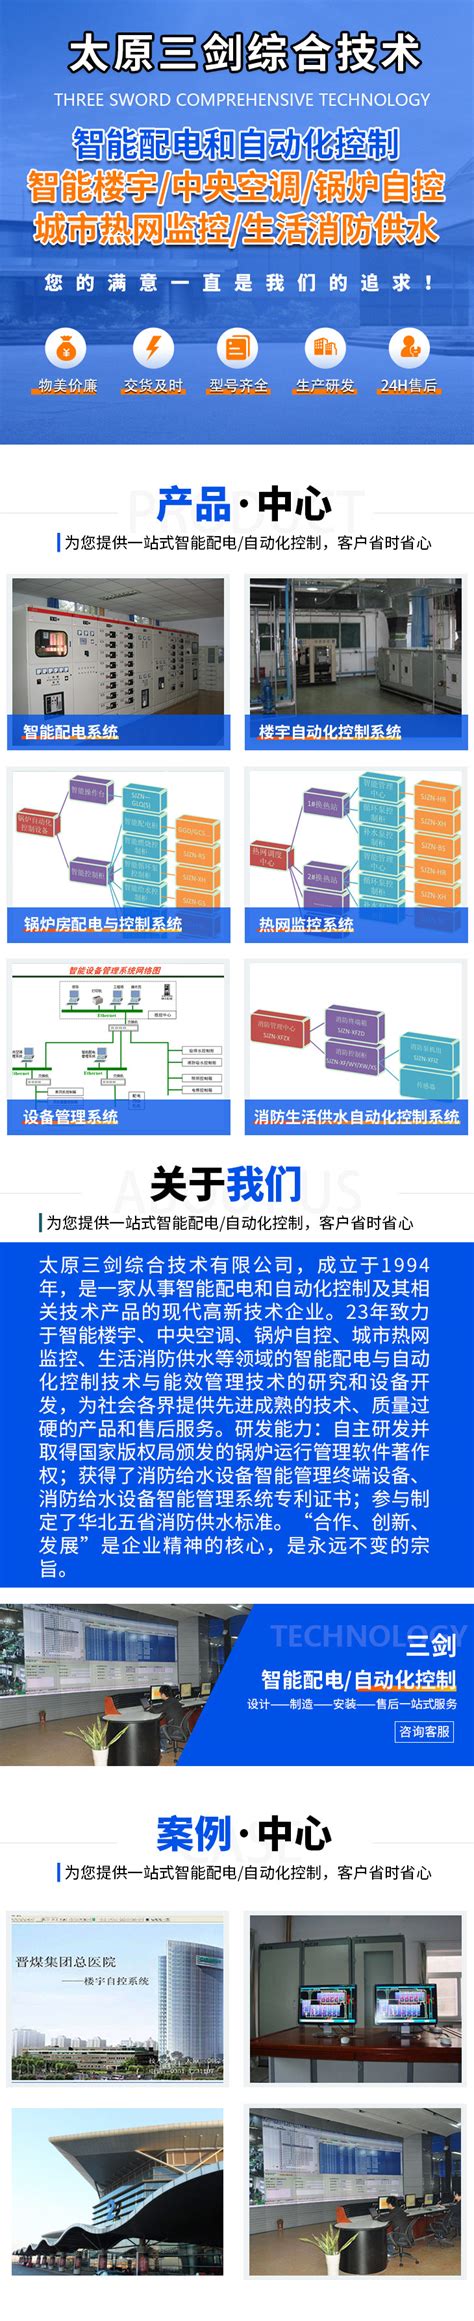 太原供热系统-深圳房地产信息网